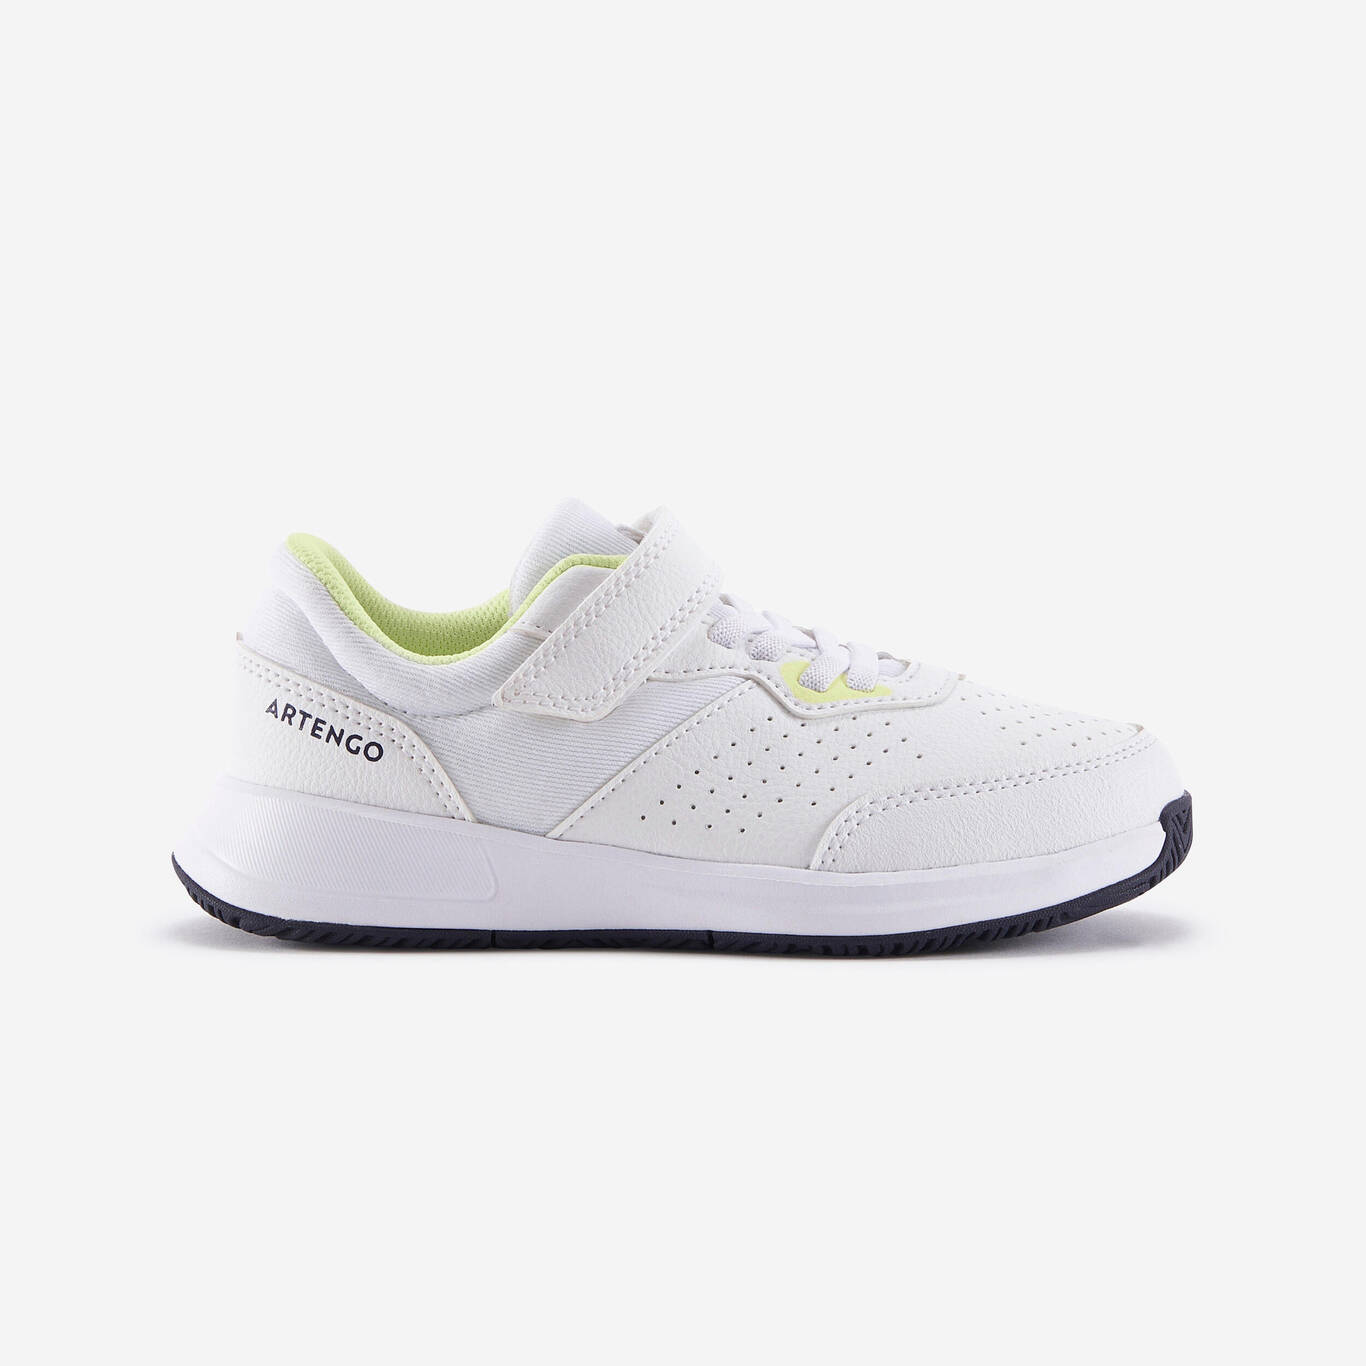 Sepatu Tenis Anak Velkro Essential KD - Putih/Kuning